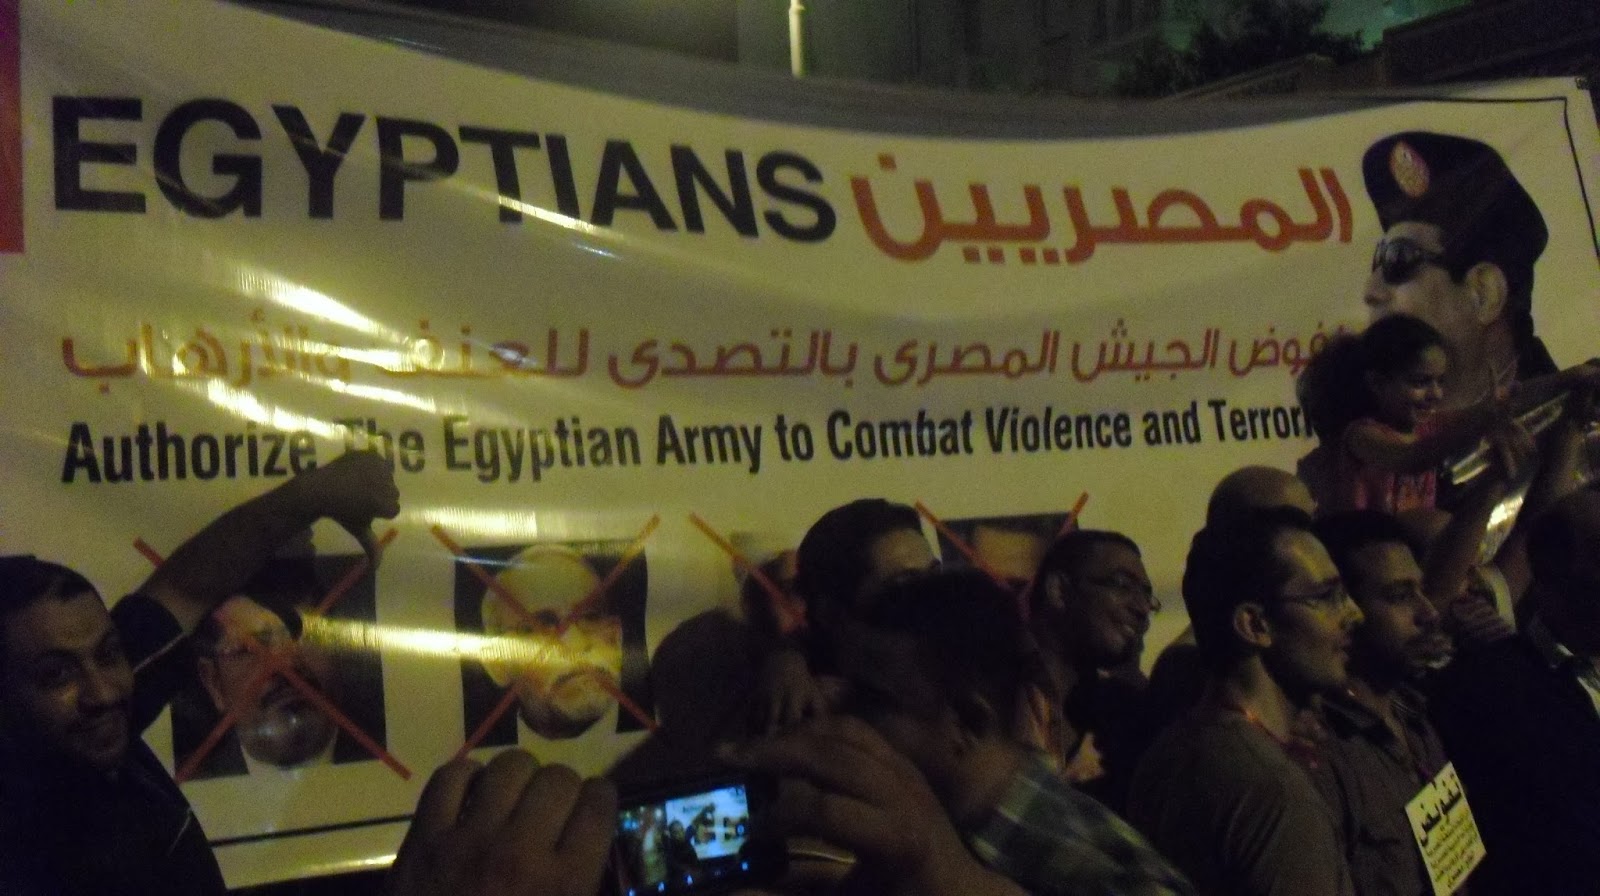 eg july 26 Egyptians authorize army